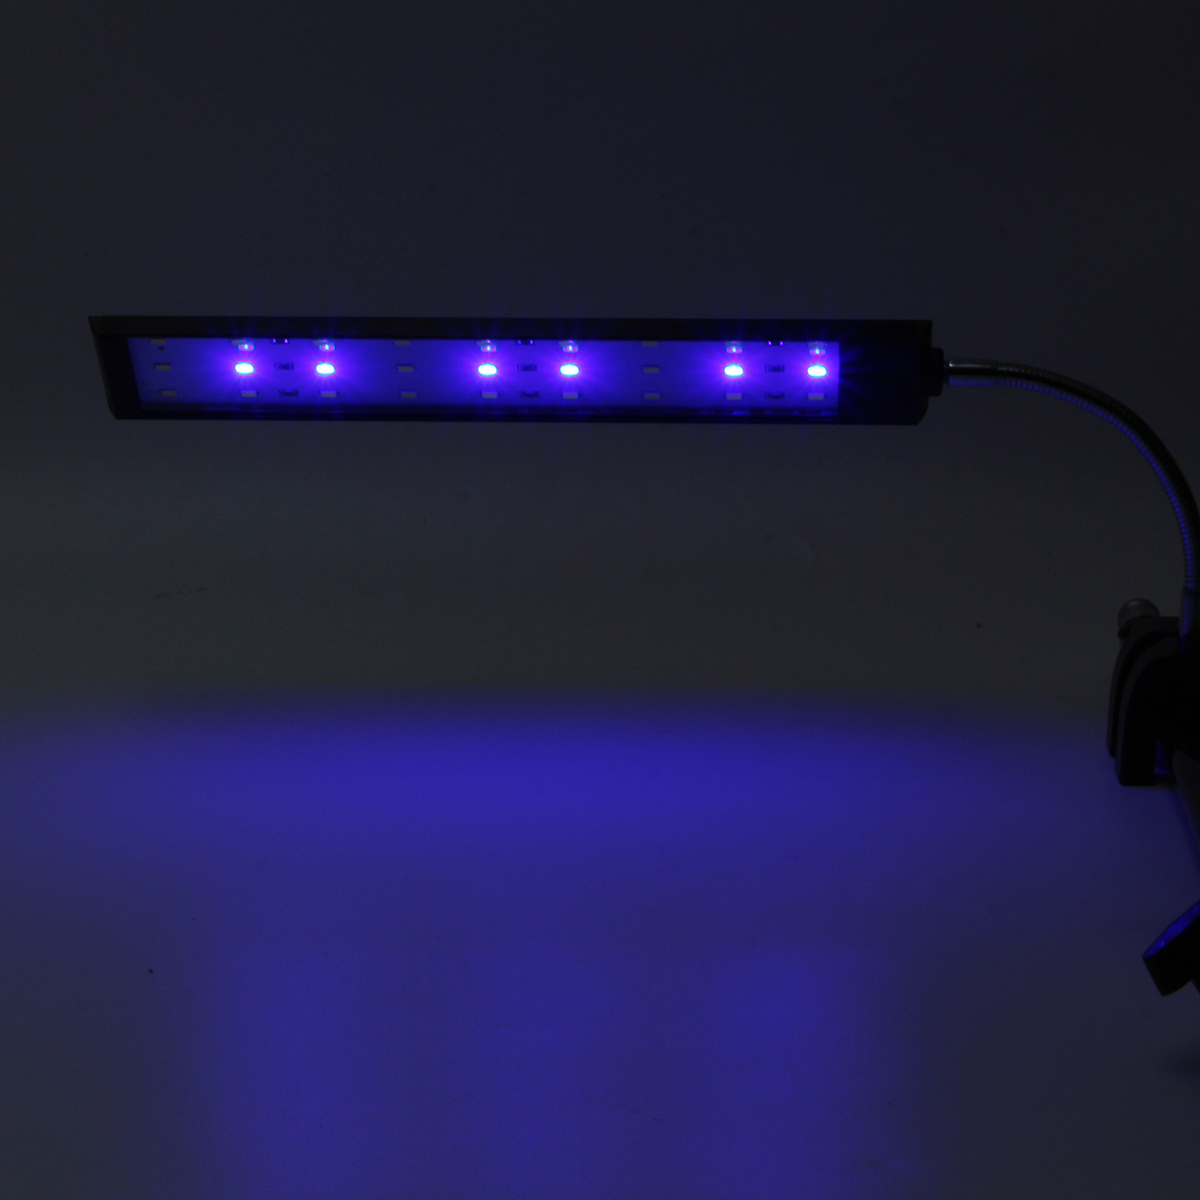 100-240V-10W-Clip-on-LED-Aquarium-Light-Fish-Tank-Decoration-Lighting-Lamp-with-White--Blue-LEDs-Tou-1640561-9